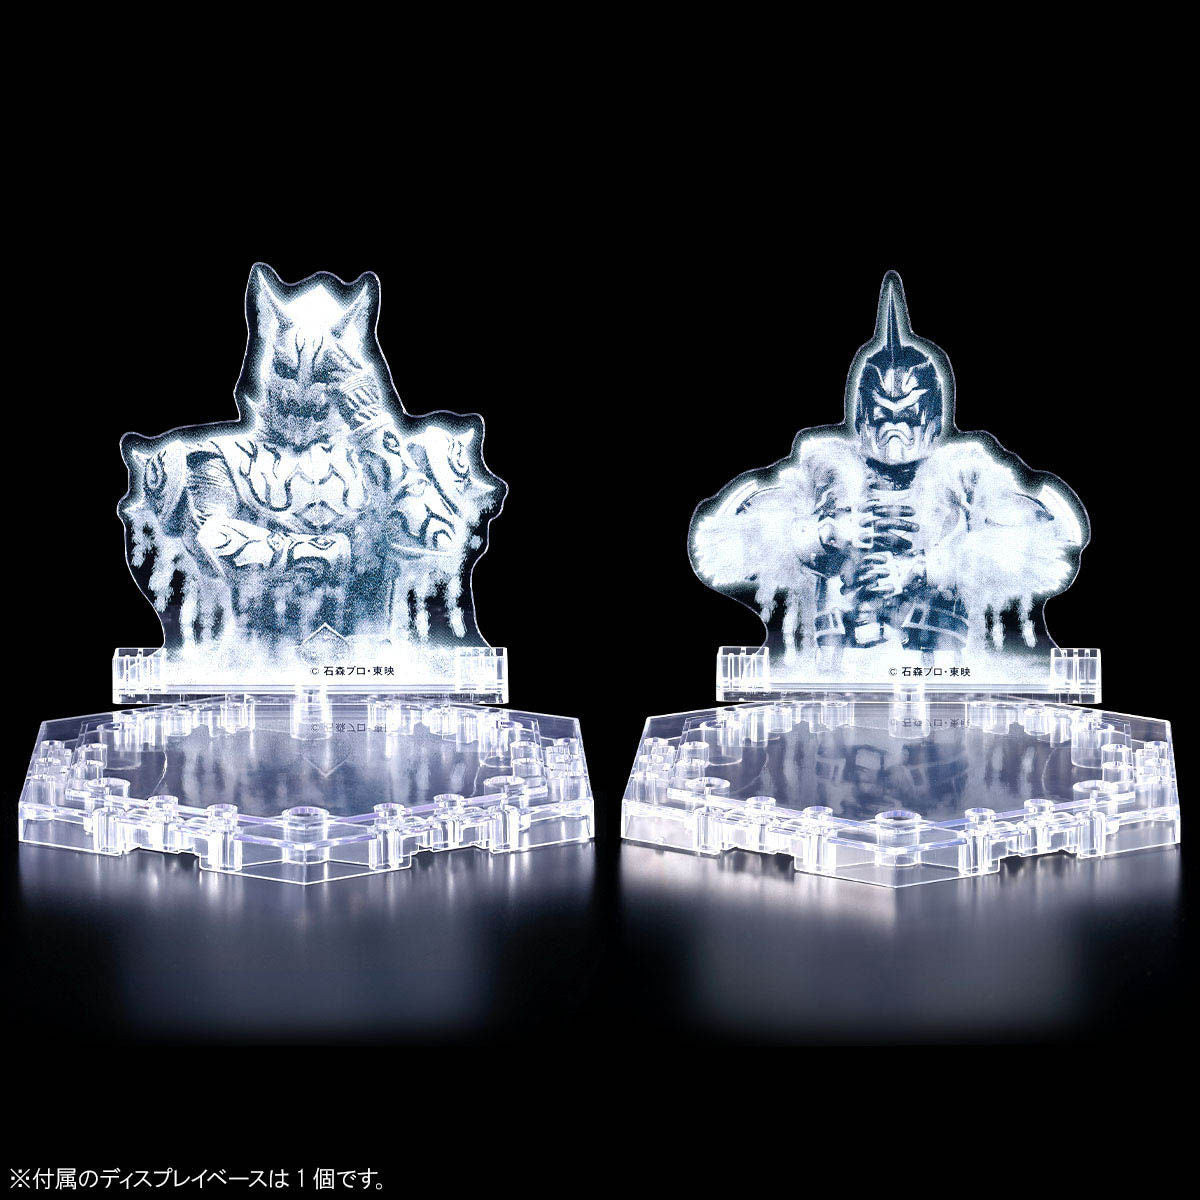 Kamen Rider Den-O (AX Form & Plat Form) Figure-rise Standard - Glacier Hobbies - Bandai